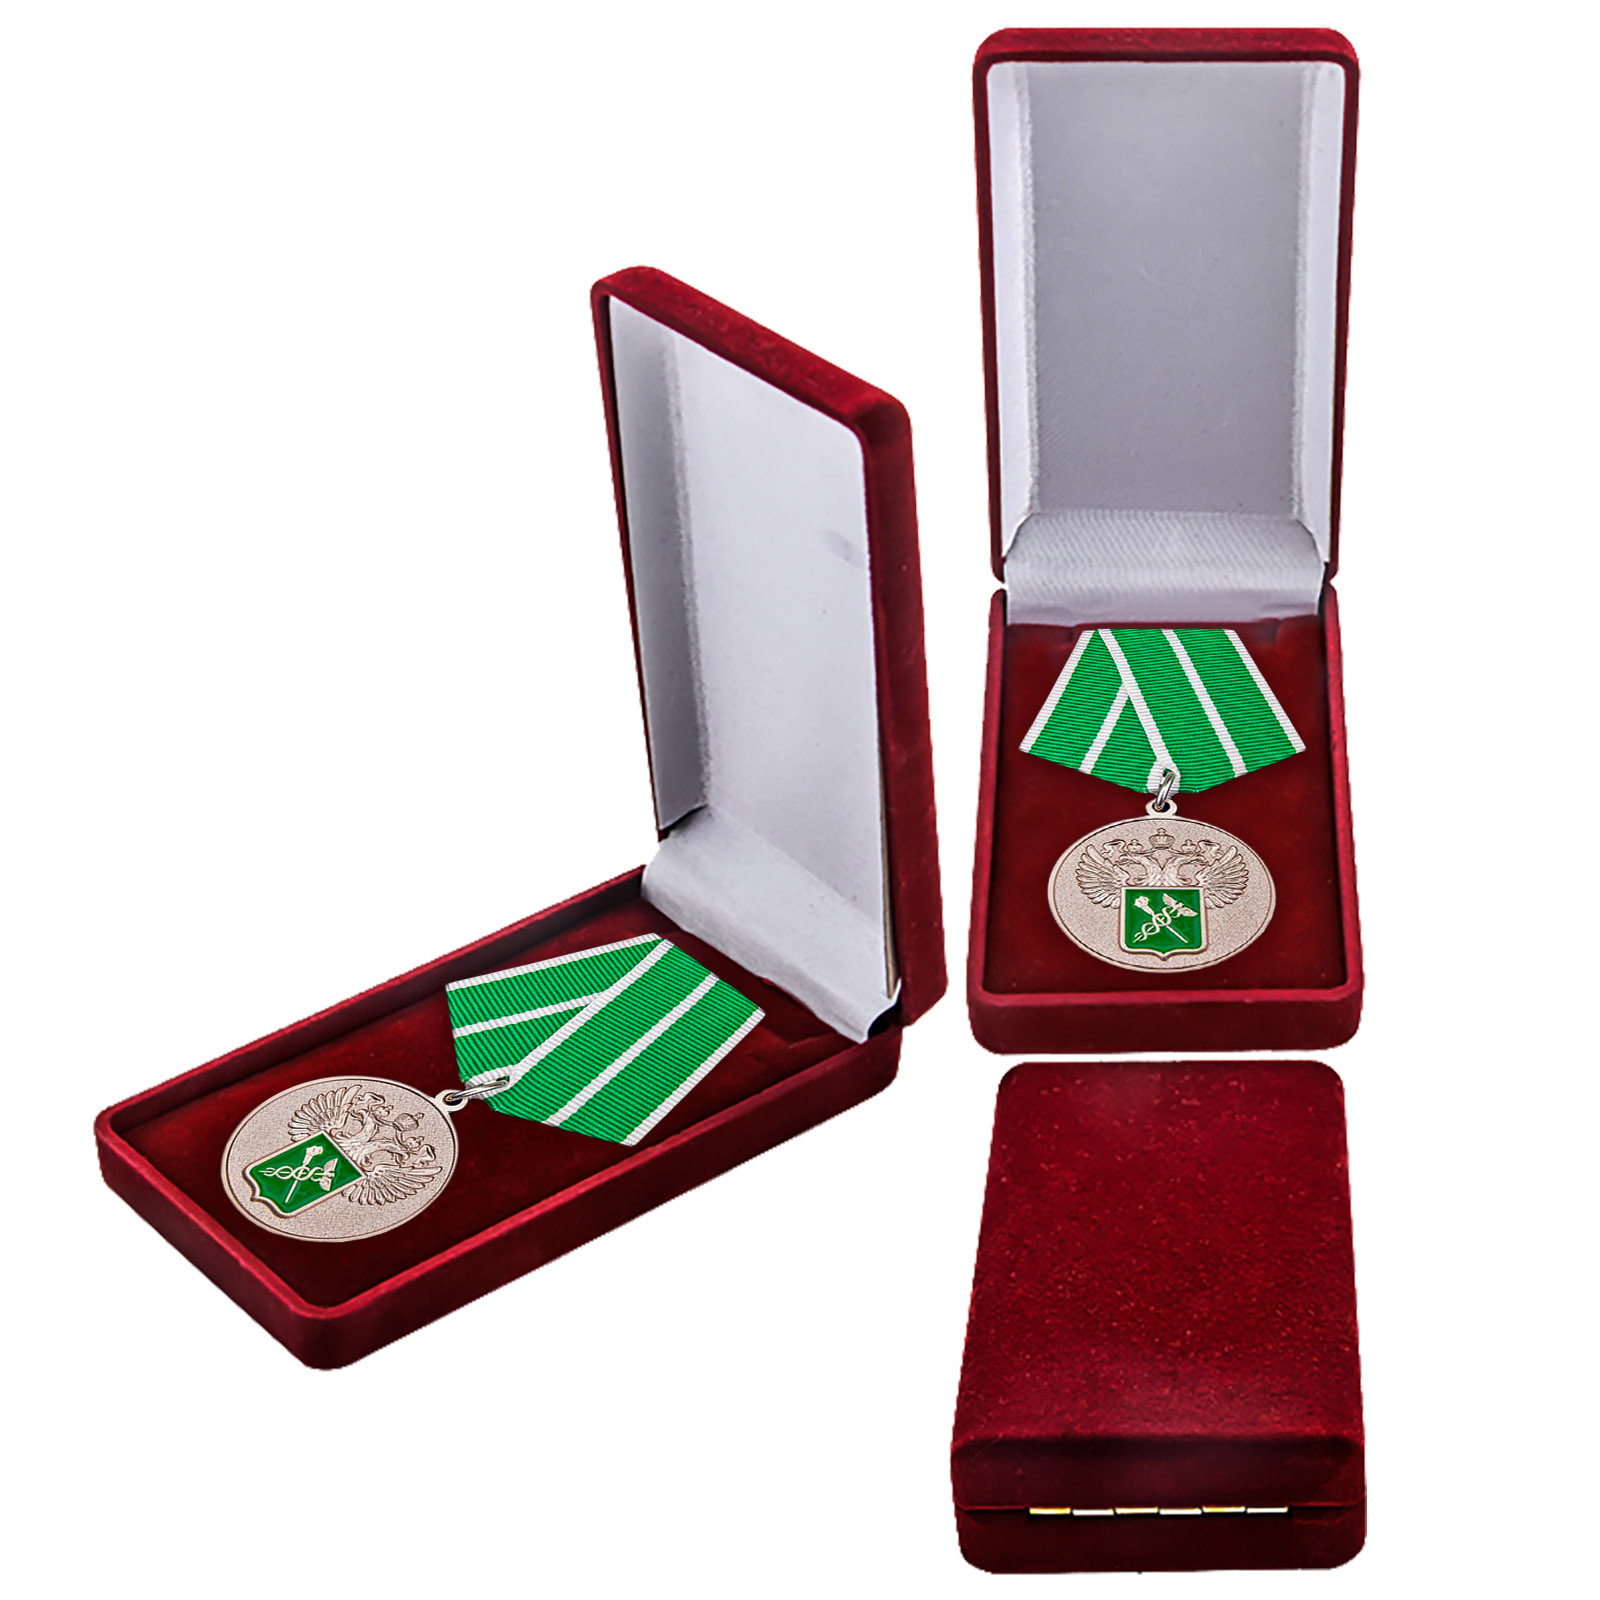 Купить ведомственную медаль "За службу в таможенных органах" 1 степени онлайн в подарок